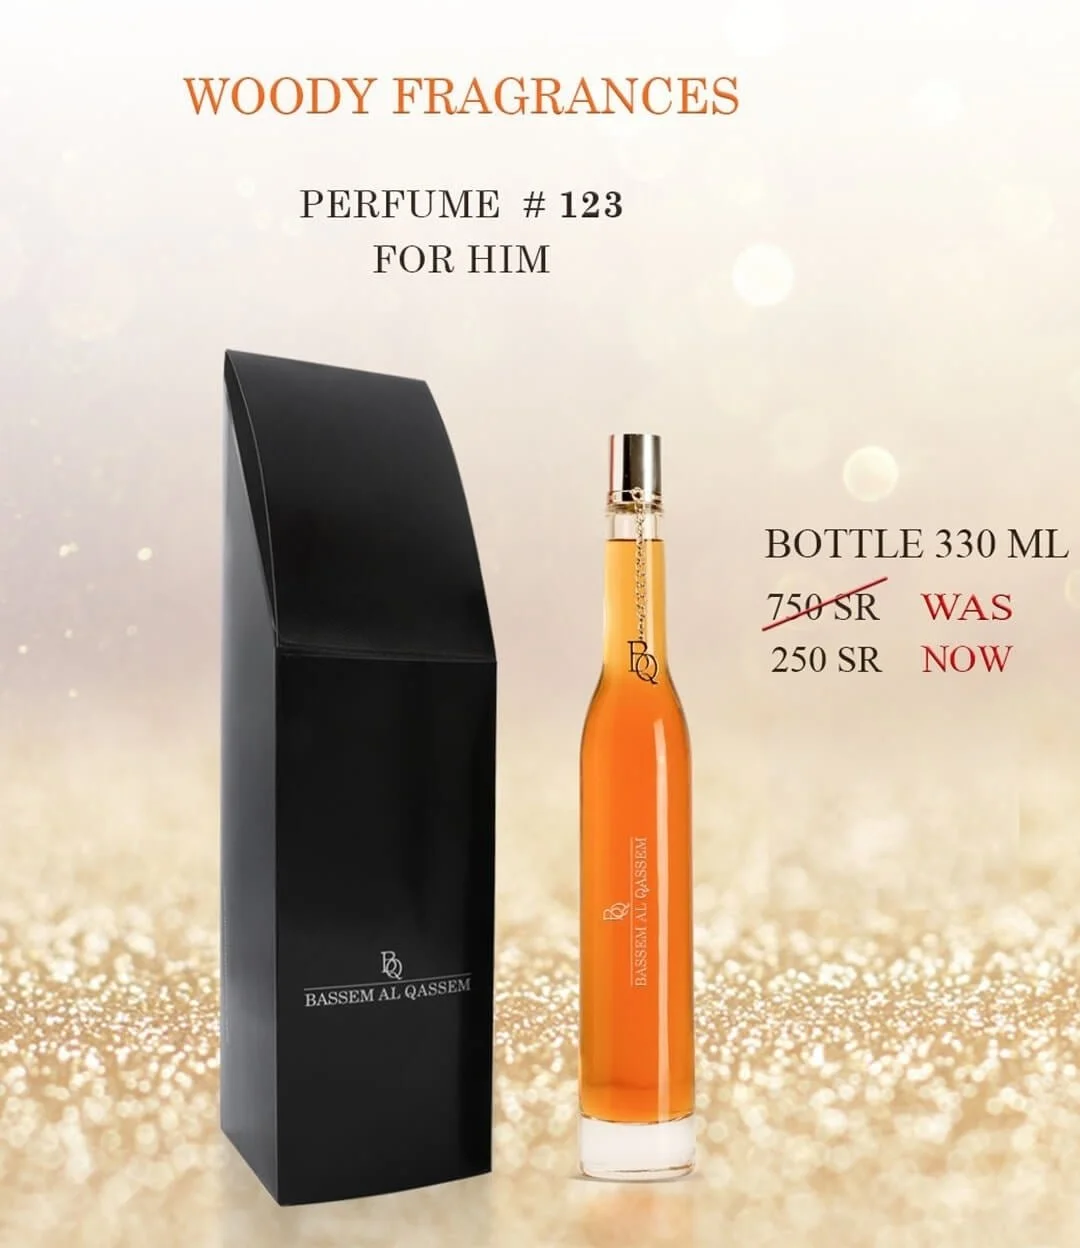 Perfume #123 Woody Fragrance for Him by Bassem Al Qassem 